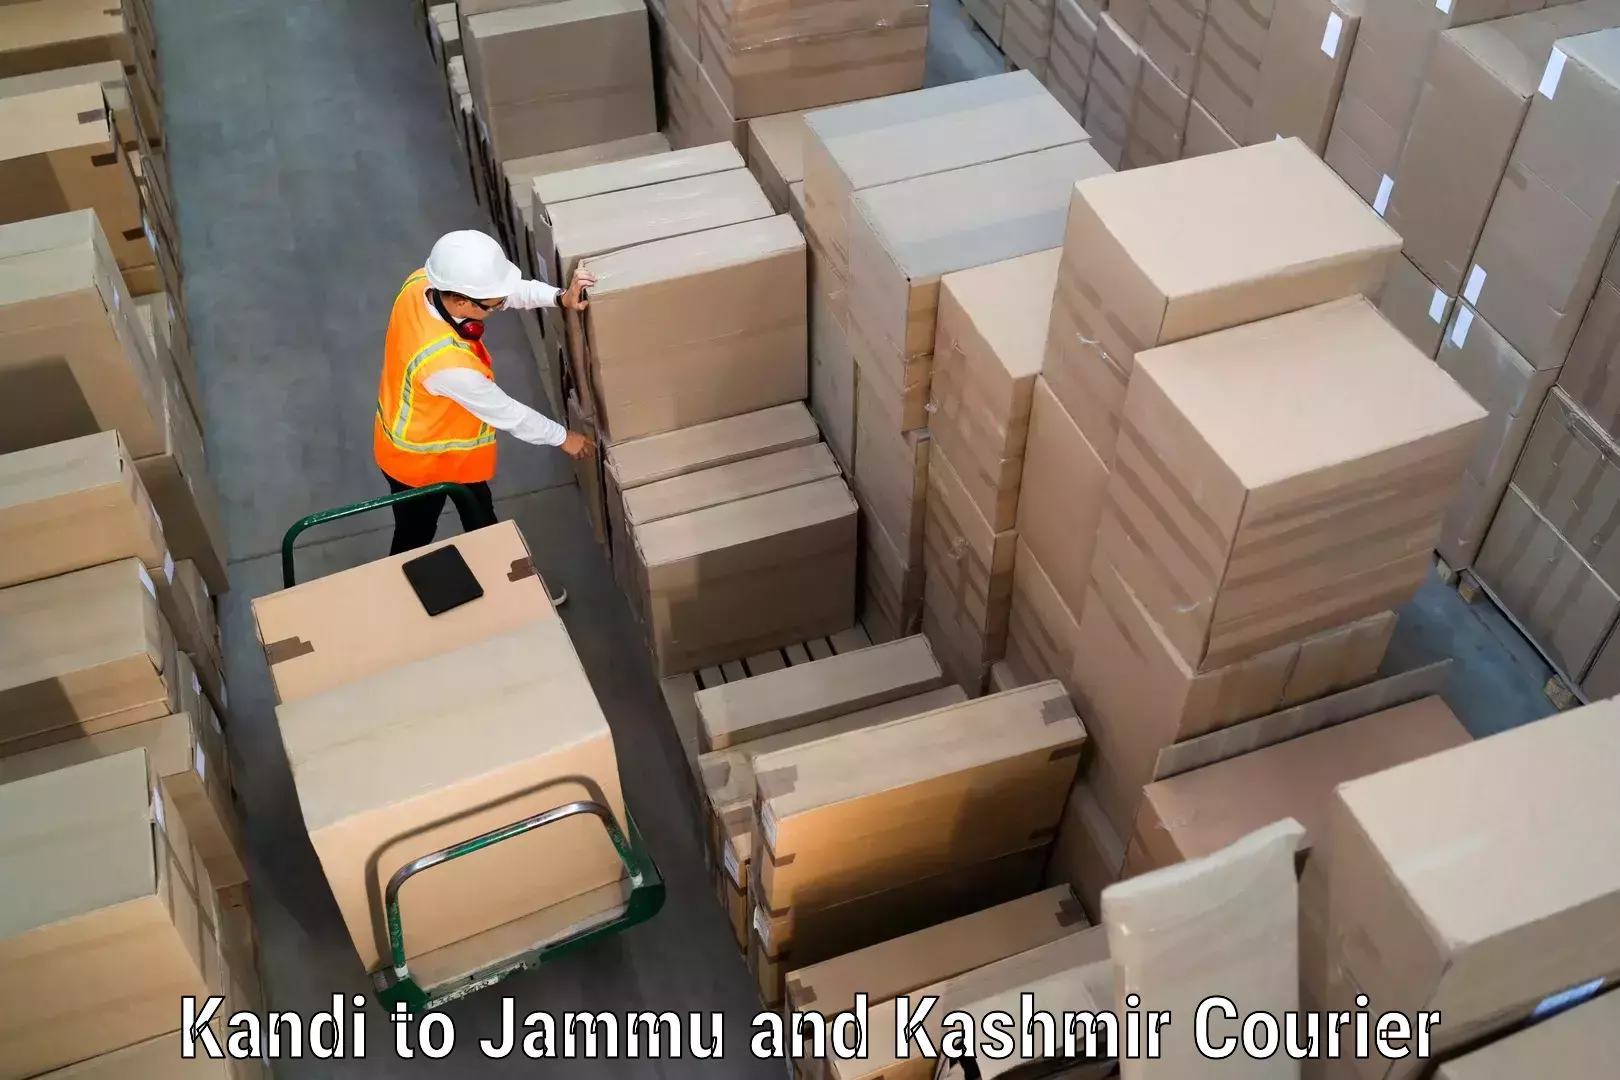 Seamless shipping service Kandi to Chenani